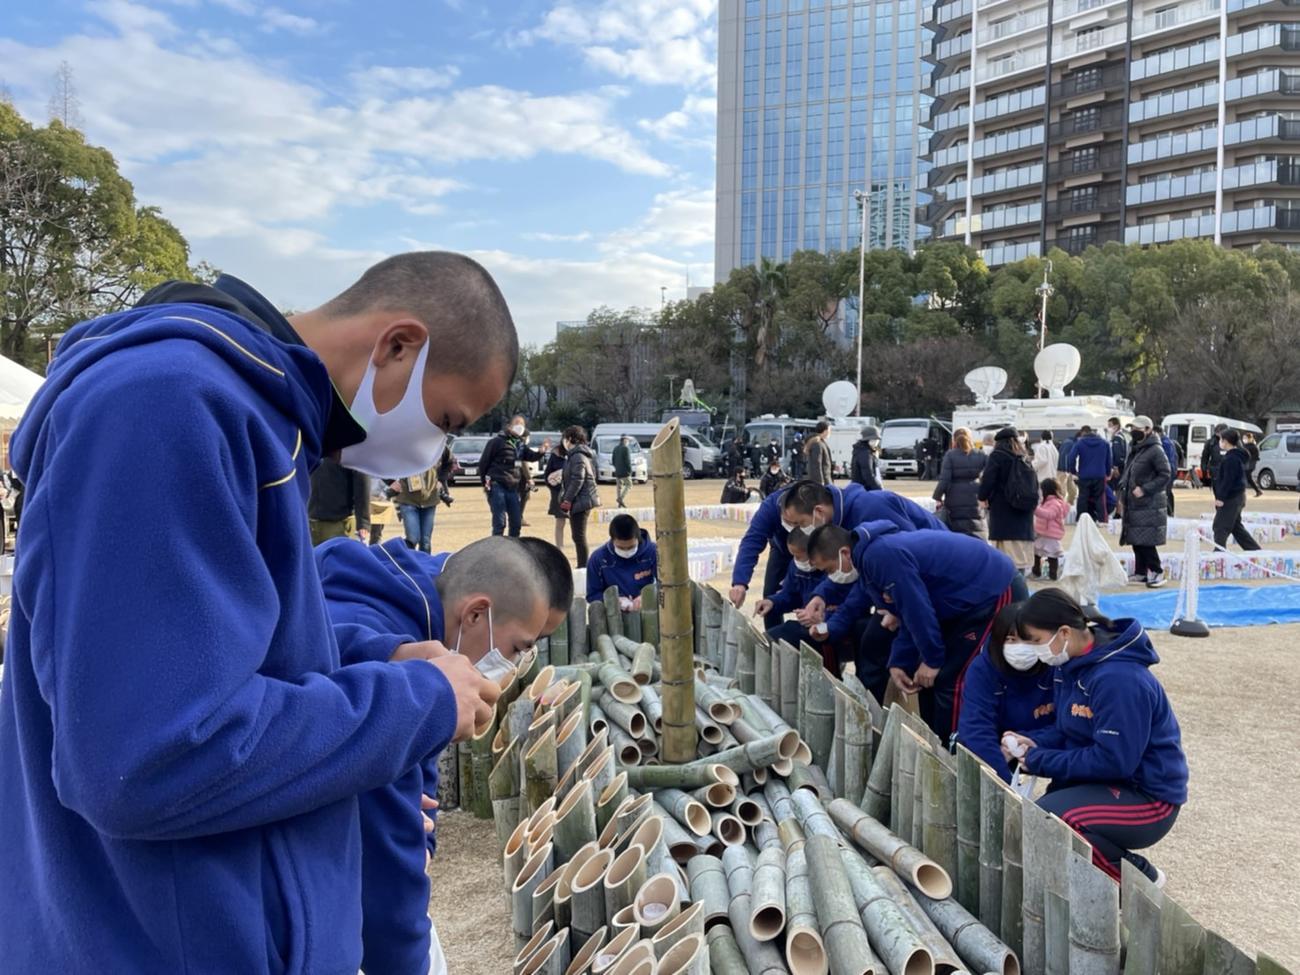 神港学園ナインは16日、神戸市内の東遊園地での「阪神淡路大震災1．17のつどい」の竹灯籠設営のボランティアを行う（写真提供は同校硬式野球部）